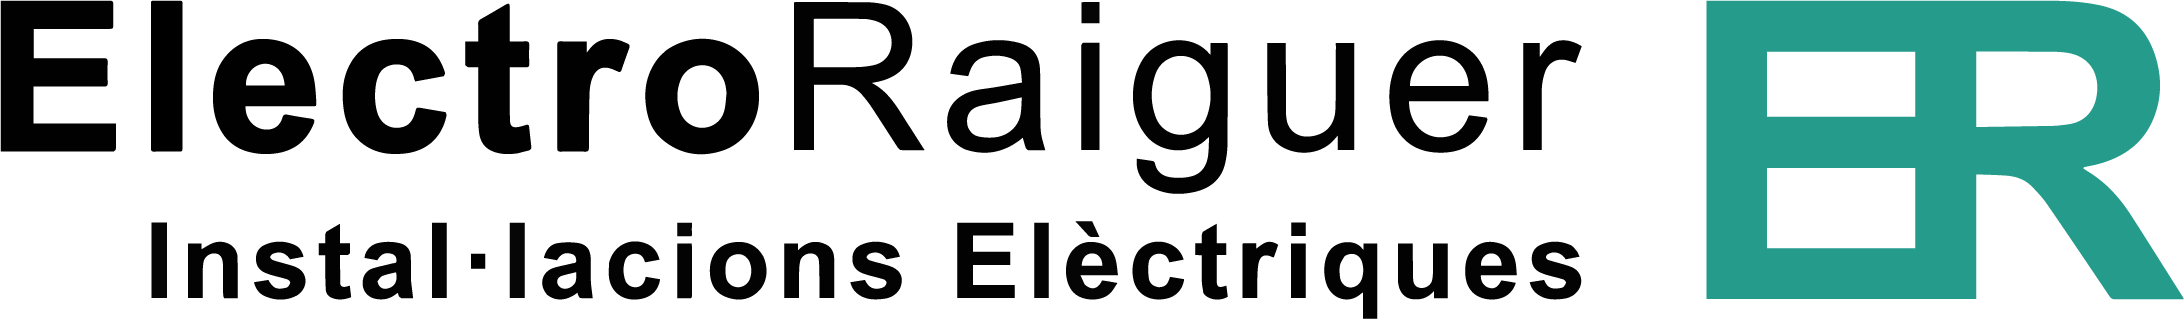 Electro Raiguer